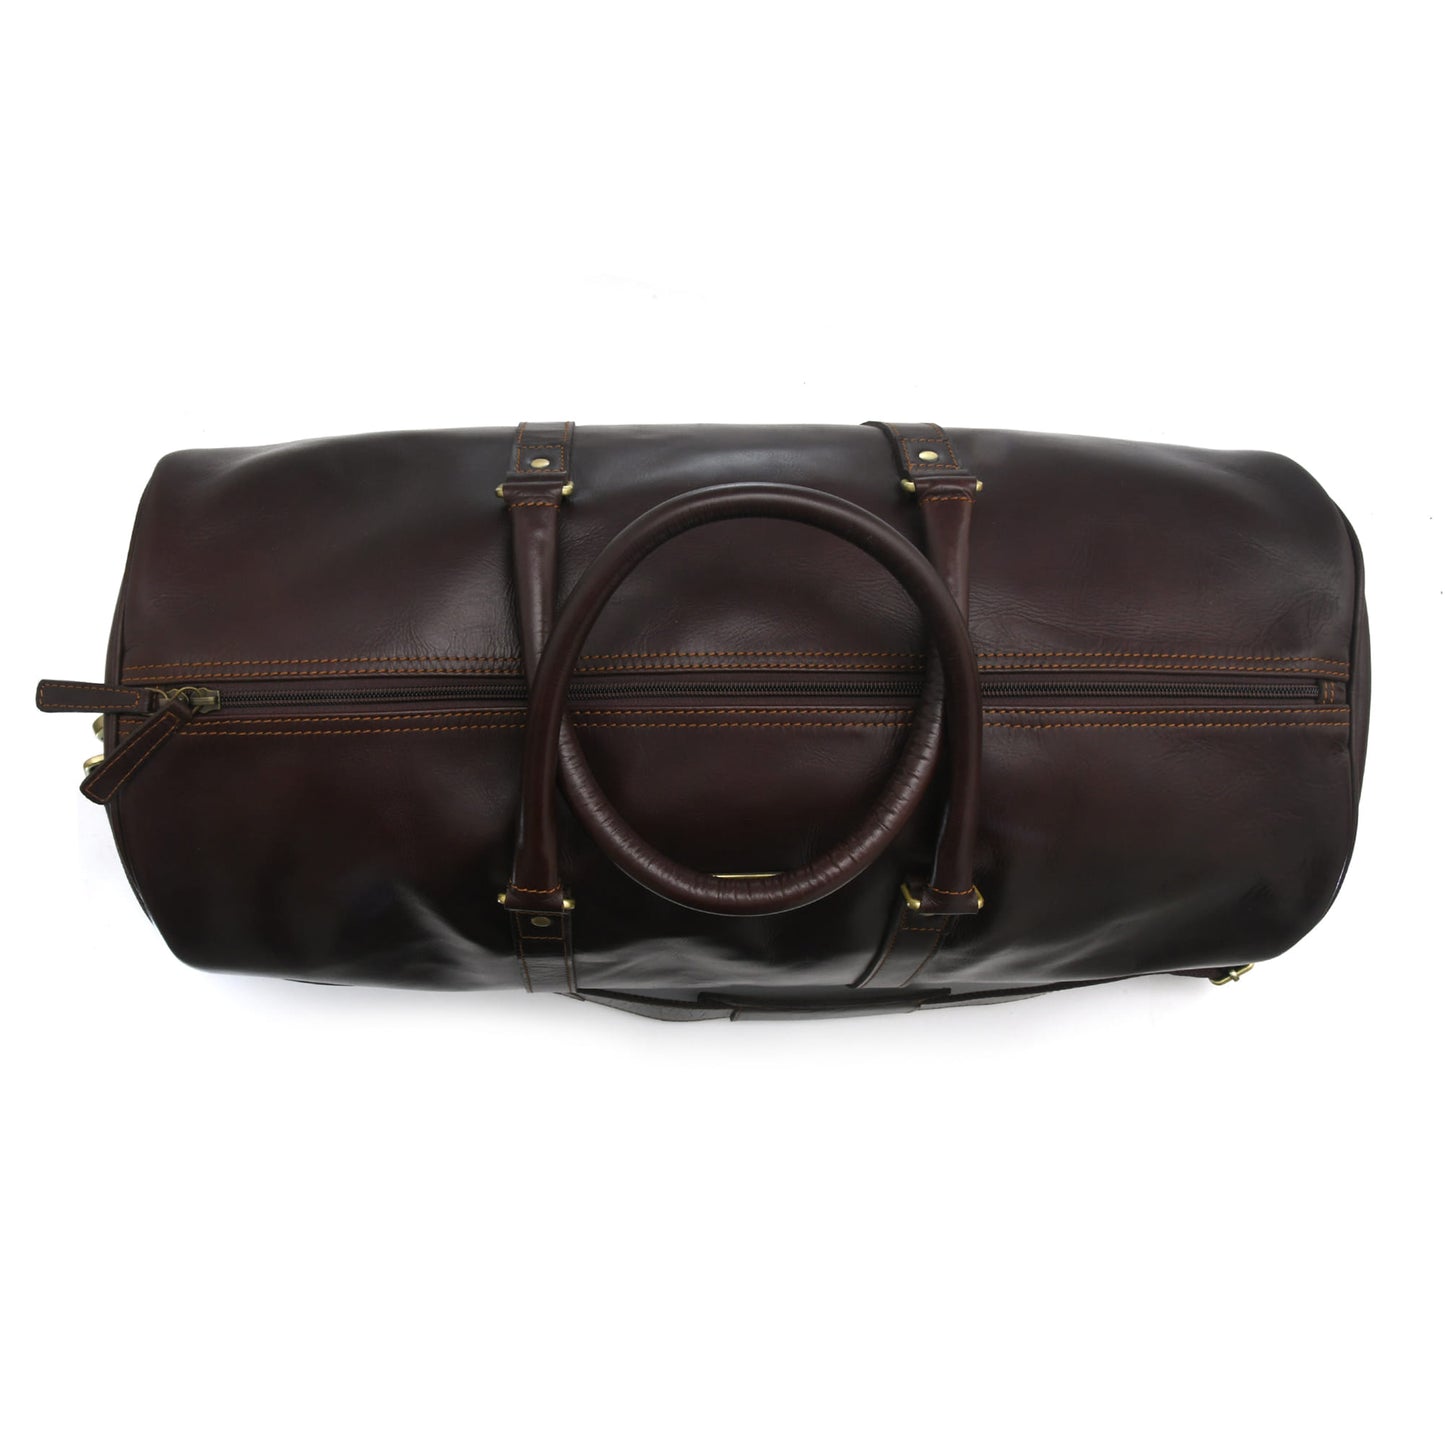 Style n Craft 392101 Duffle Bag in Full Grain Dark Brown Leather - Top View